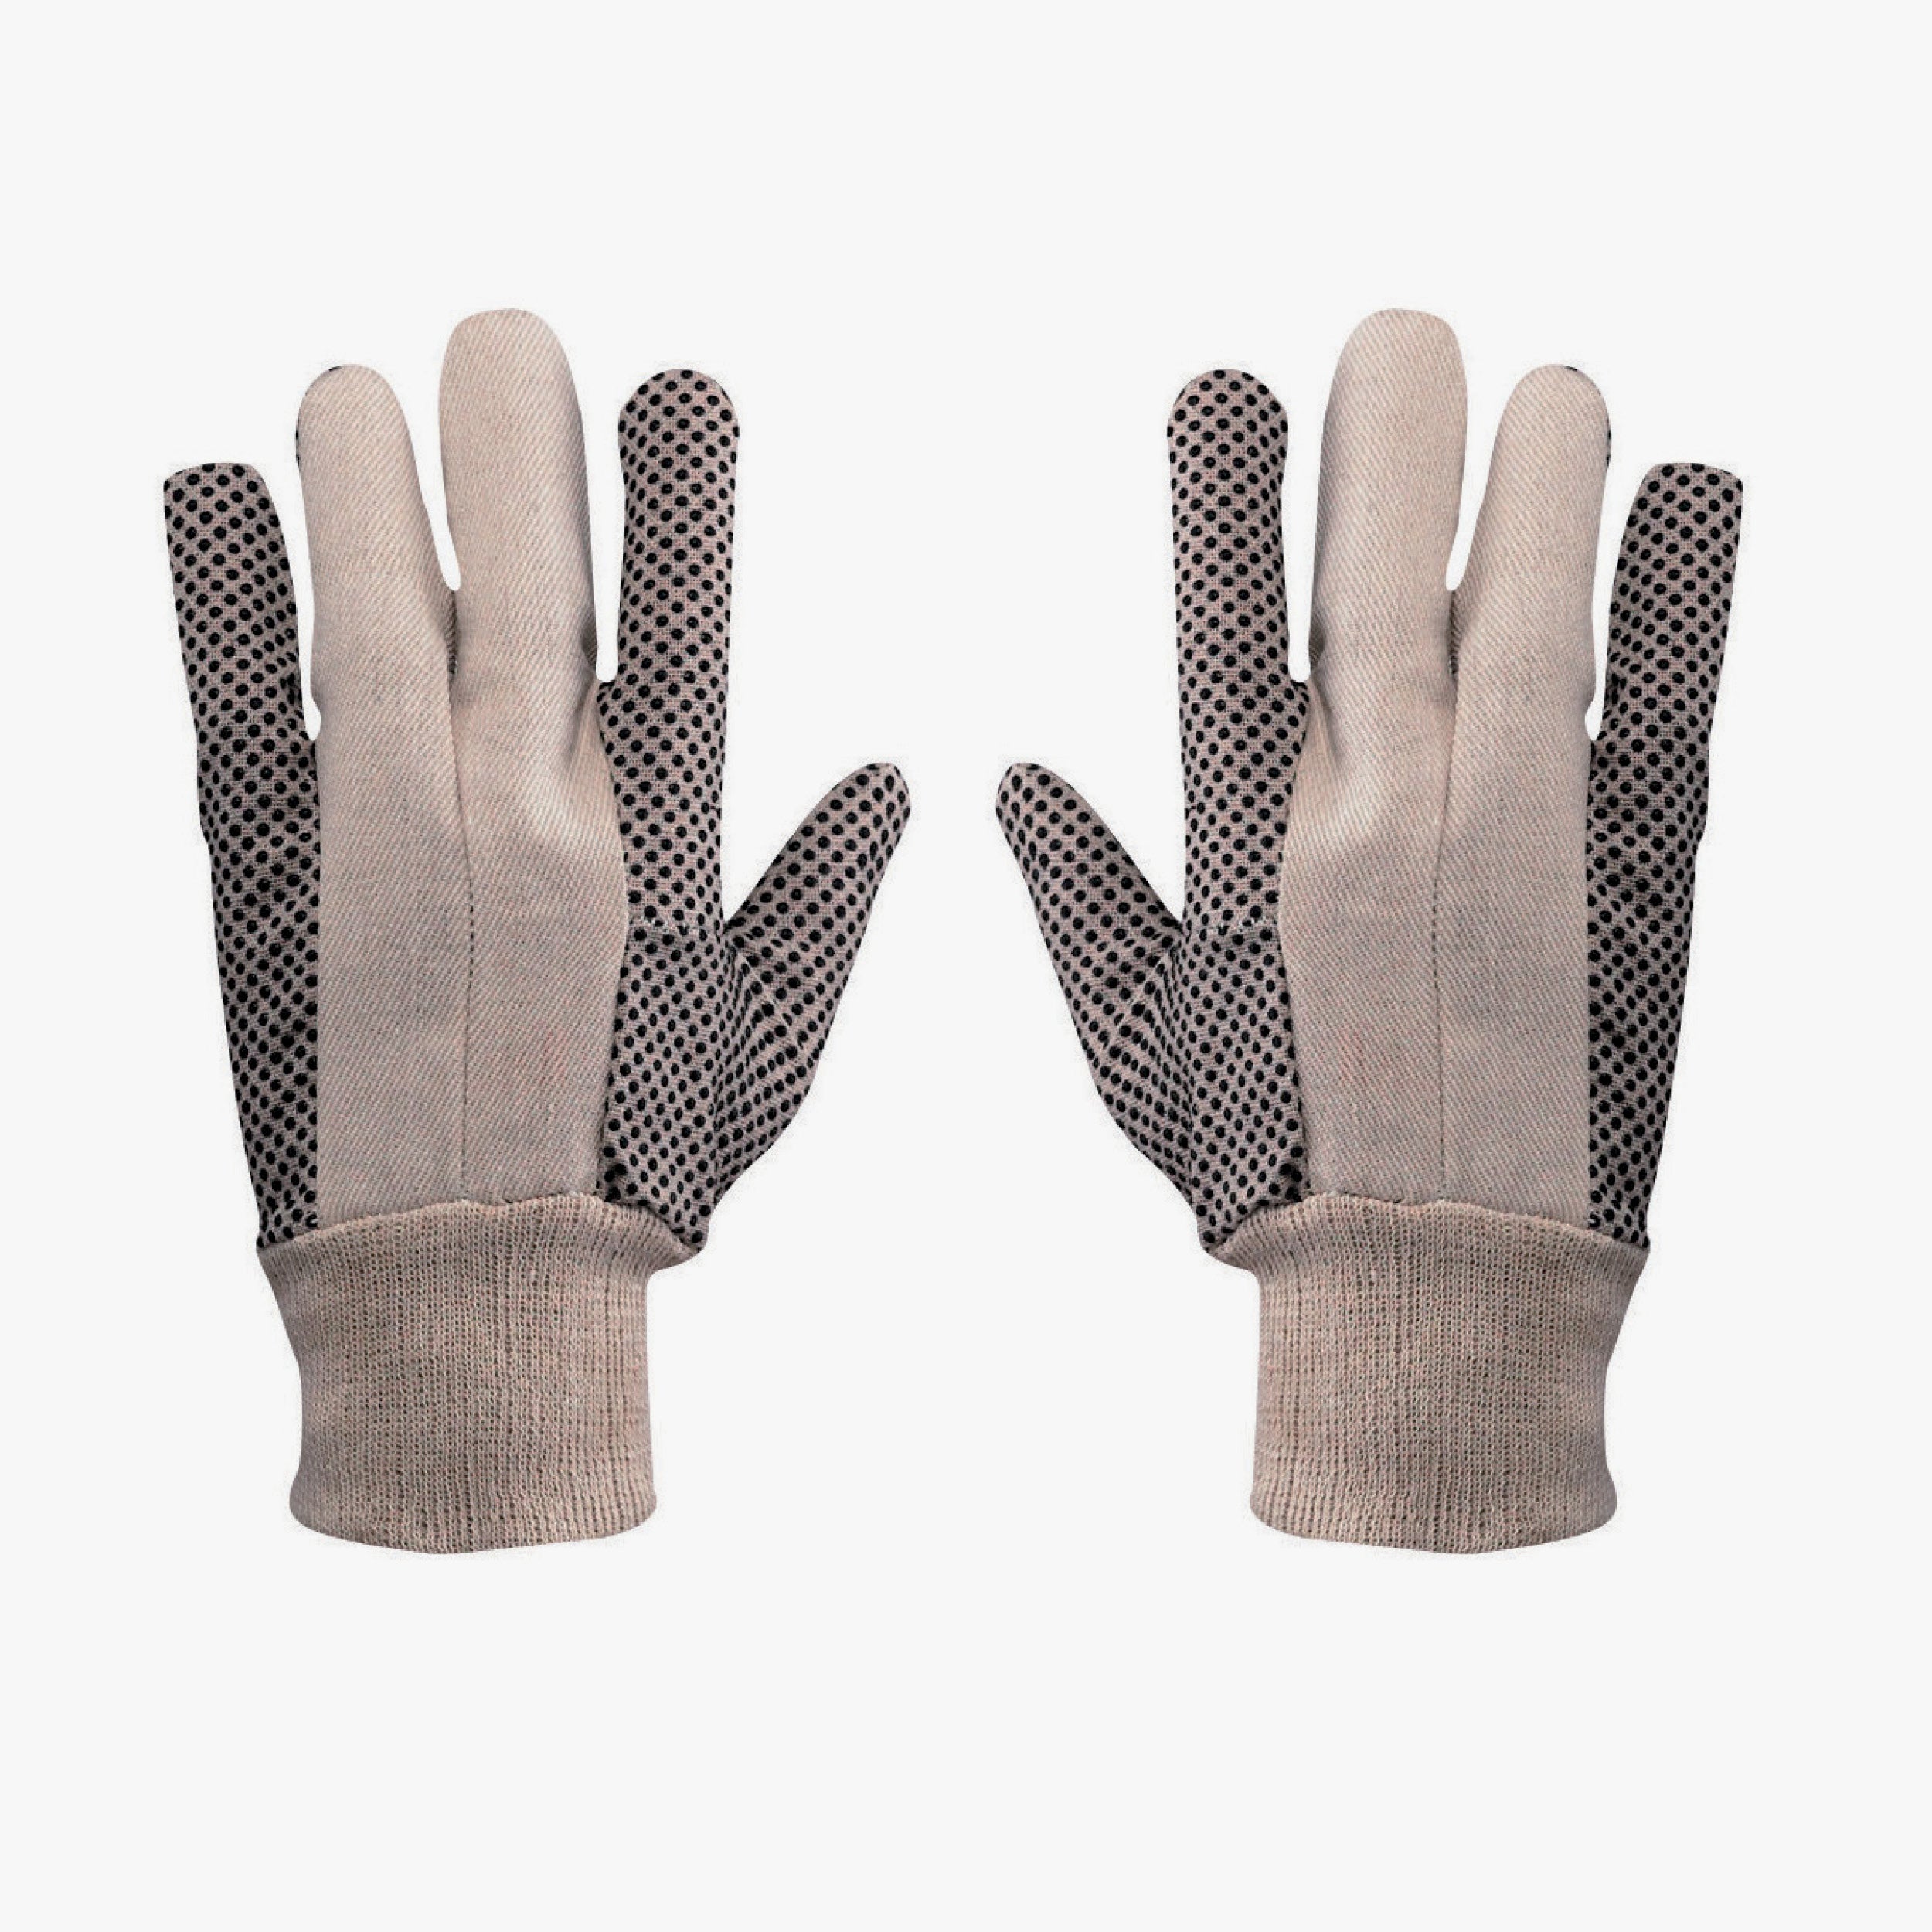 Cotton glove 338041 "Polka Dot" taglia10 - 12pcs